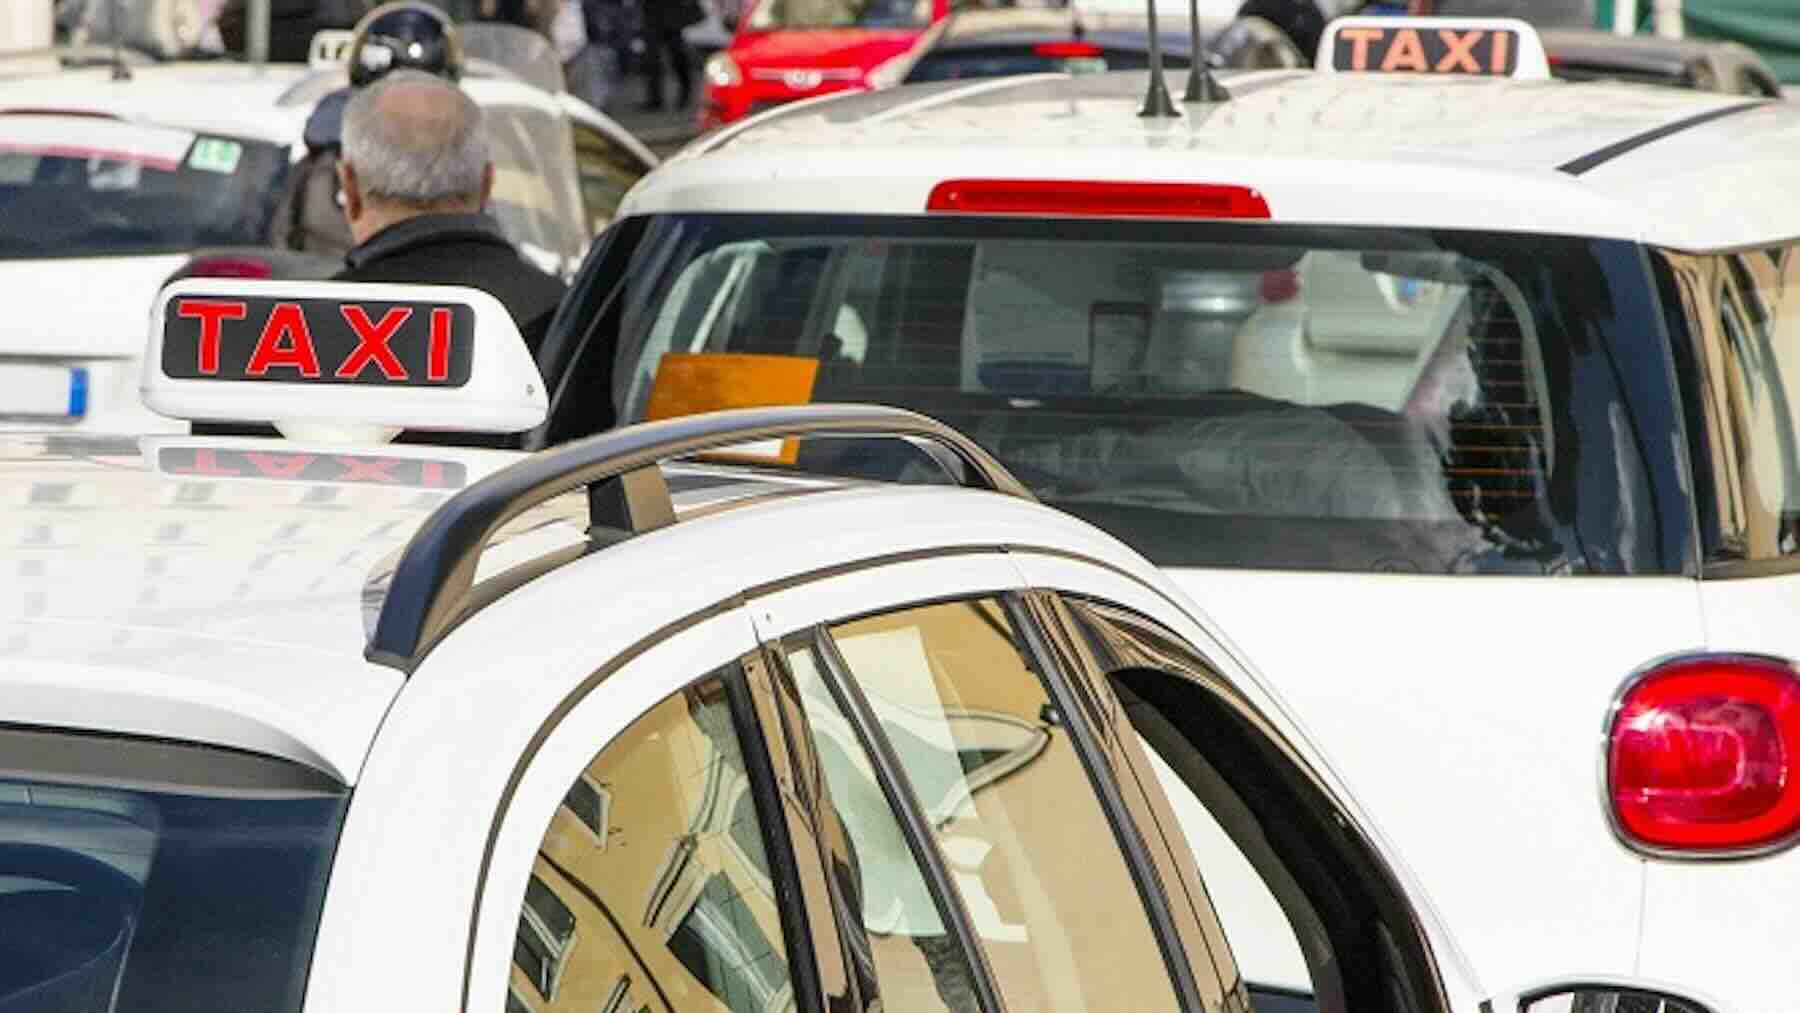 Taxi a Roma: nuove licenze, aumenti e nuovi sconti